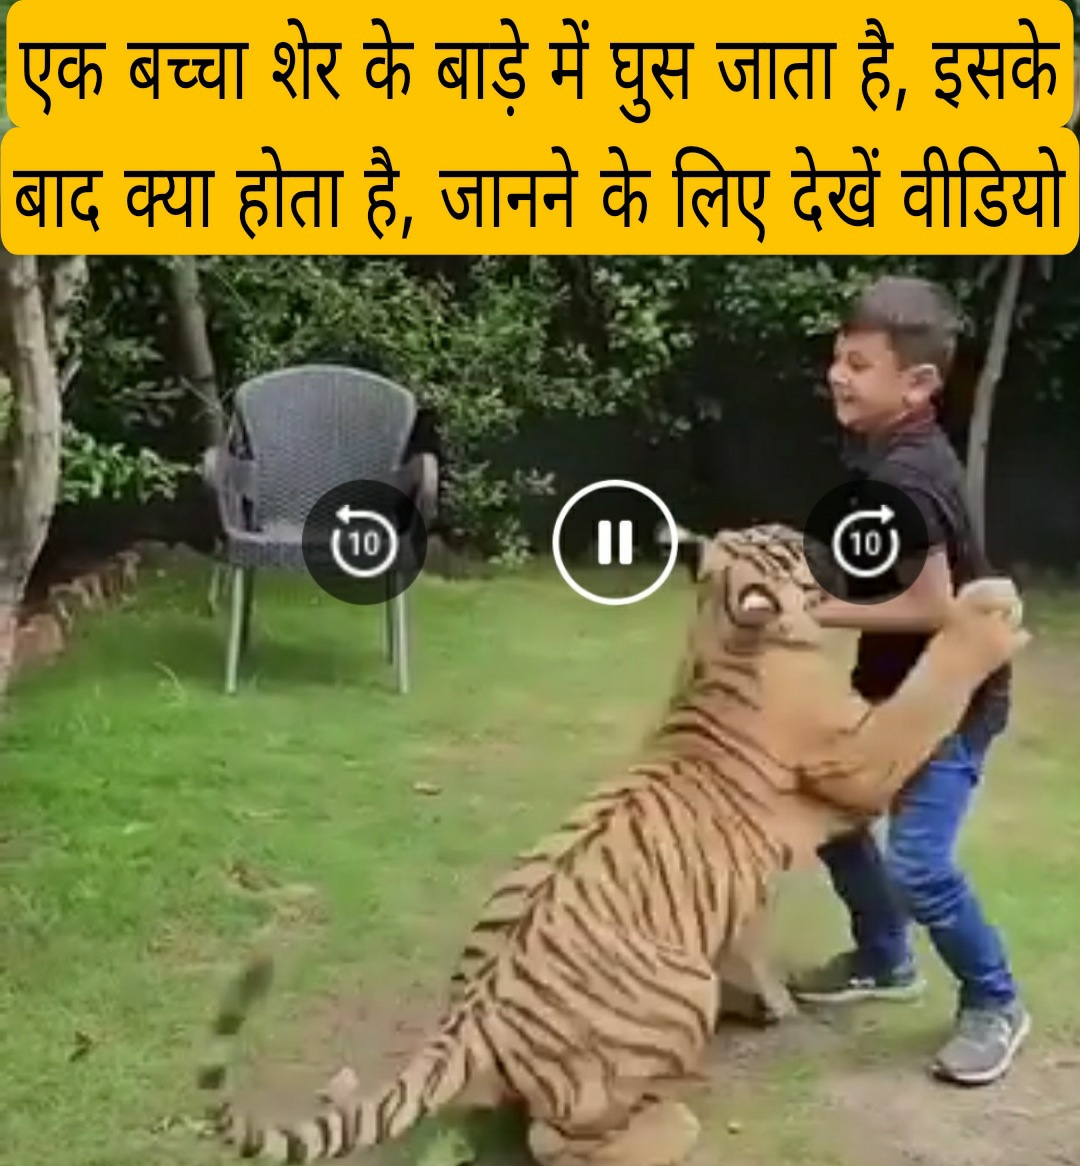 एक बच्चा शेर के बाड़े में घुस जाता है, इसके बाद क्या होता है, जानने के लिए देखें वीडियो